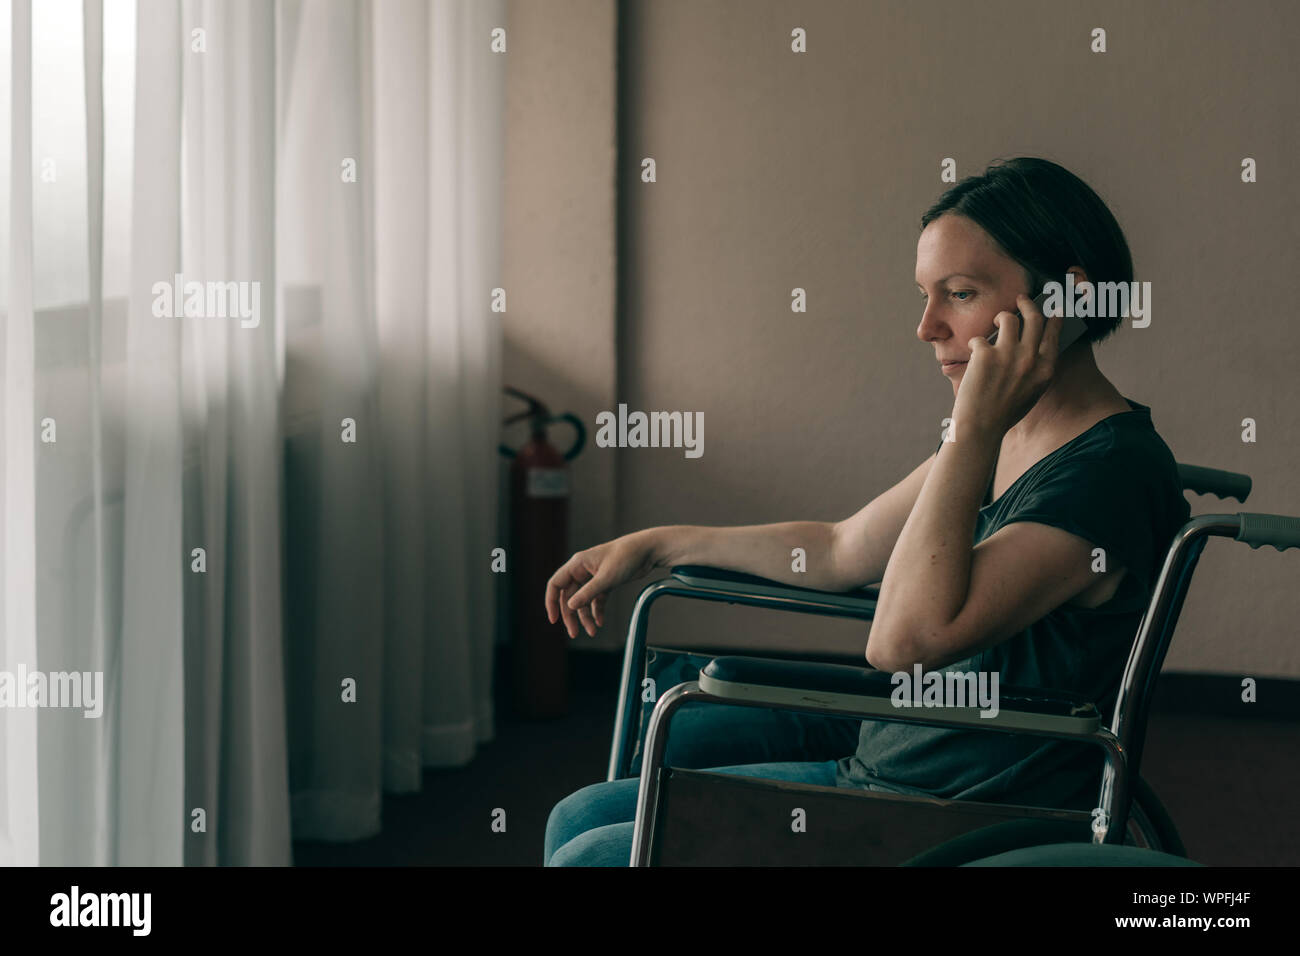 Femme d'espoir une personne handicapée en fauteuil roulant : talking on mobile phone in nursing home Banque D'Images